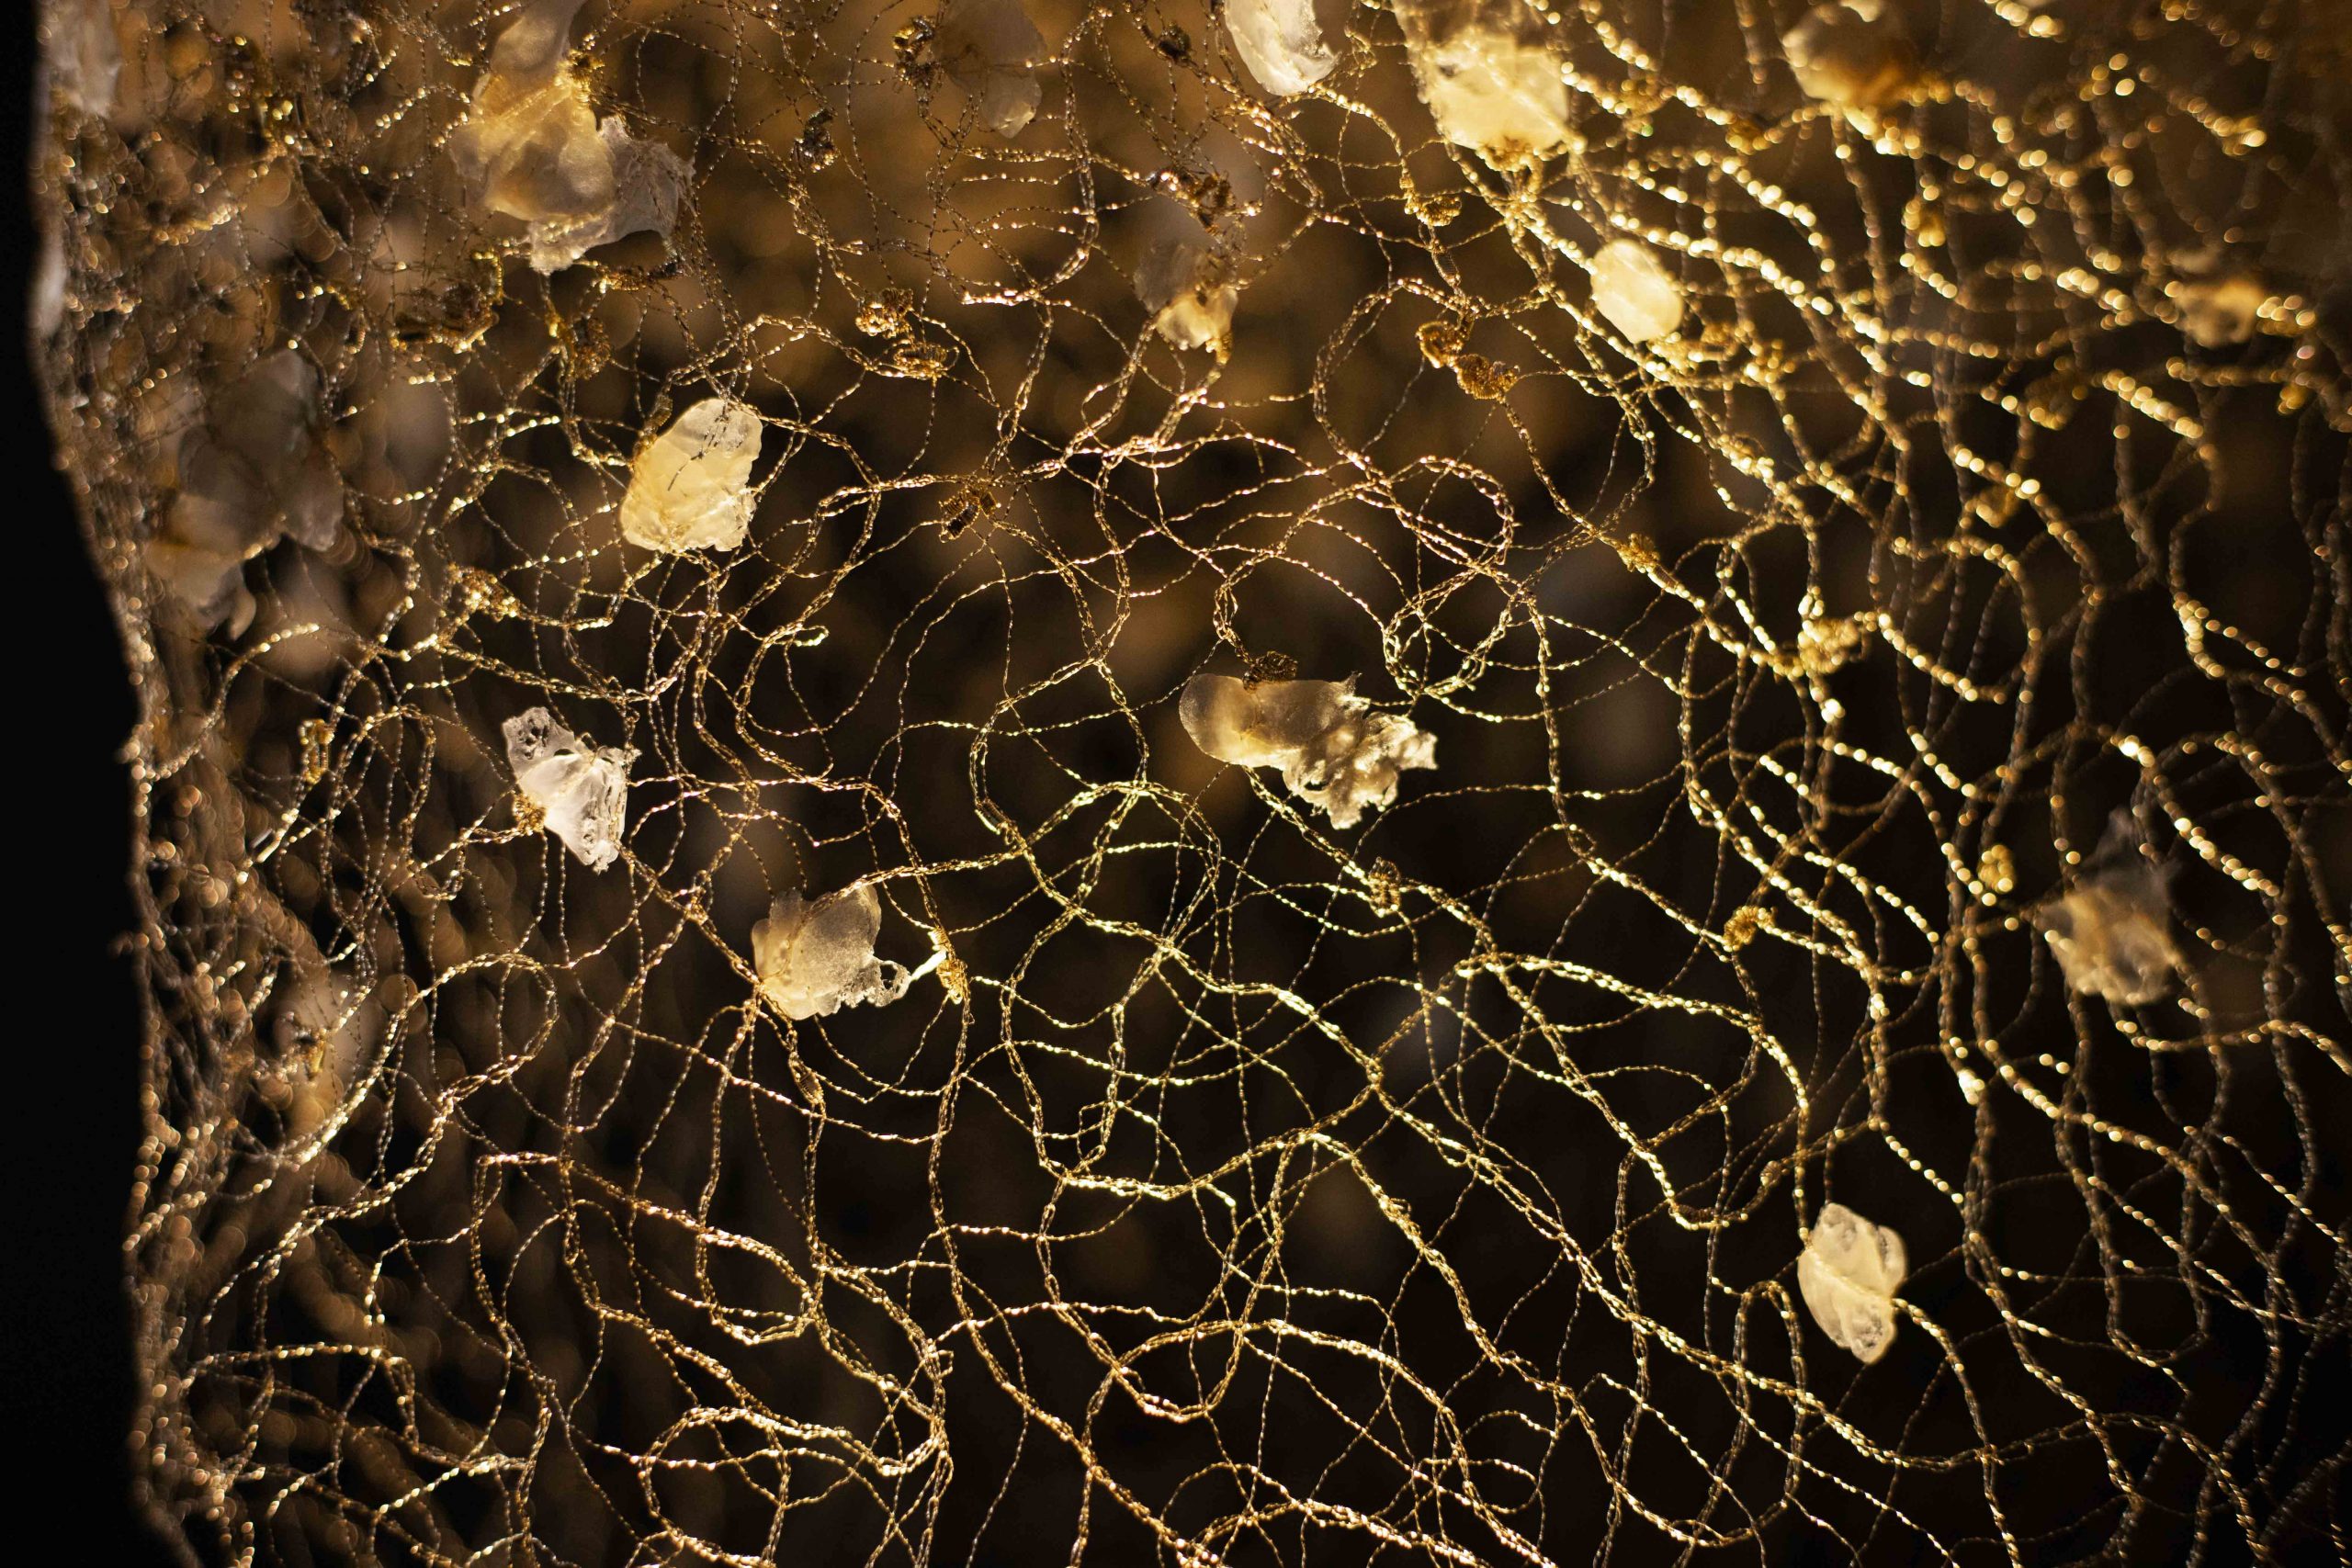 Détails de broderie métallique du bijou-vêtement Envol, conçu par la créatrice Marie Archambaud. On aperçoit le réseau de fils de cuivre vernis à l'or captant la lumière et les pétales de pastique.